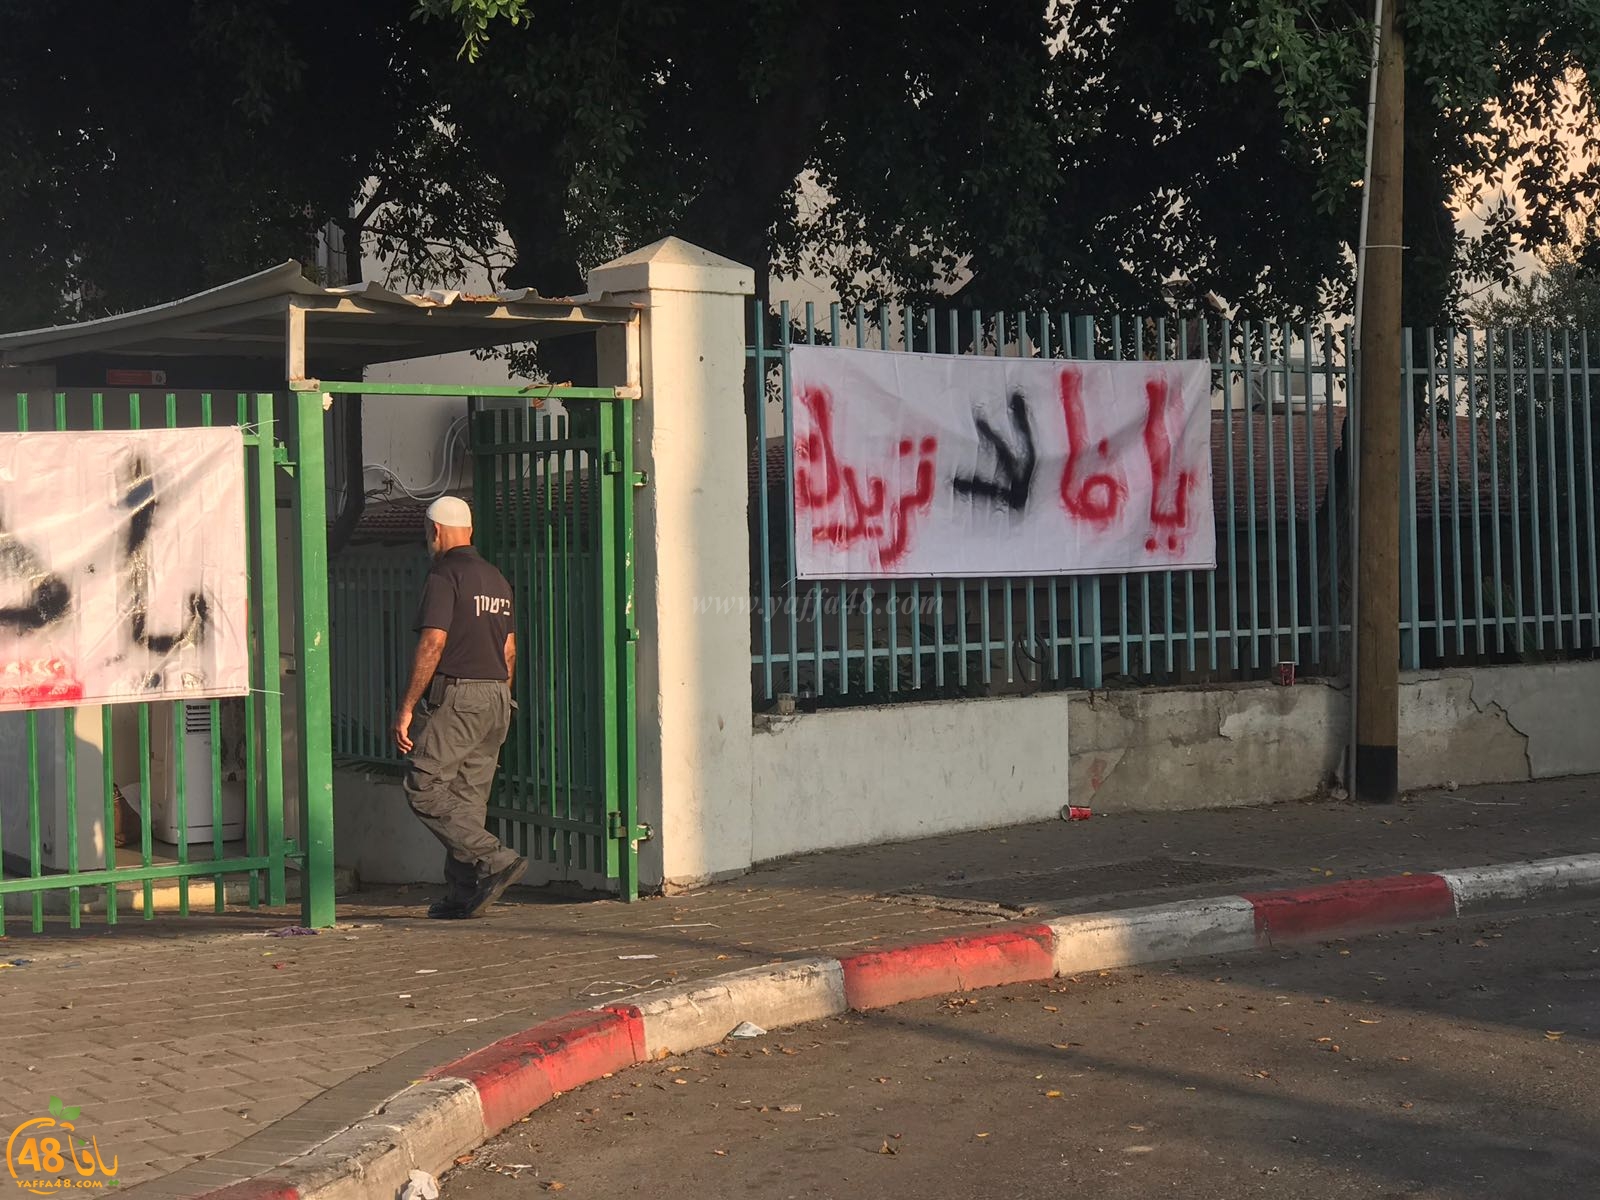  يافا: لجنة الآباء تنصب خيمة اعتصام أمام باب المدرسة الثانوية الشاملة تحت شعار ارحلي لا نريدك